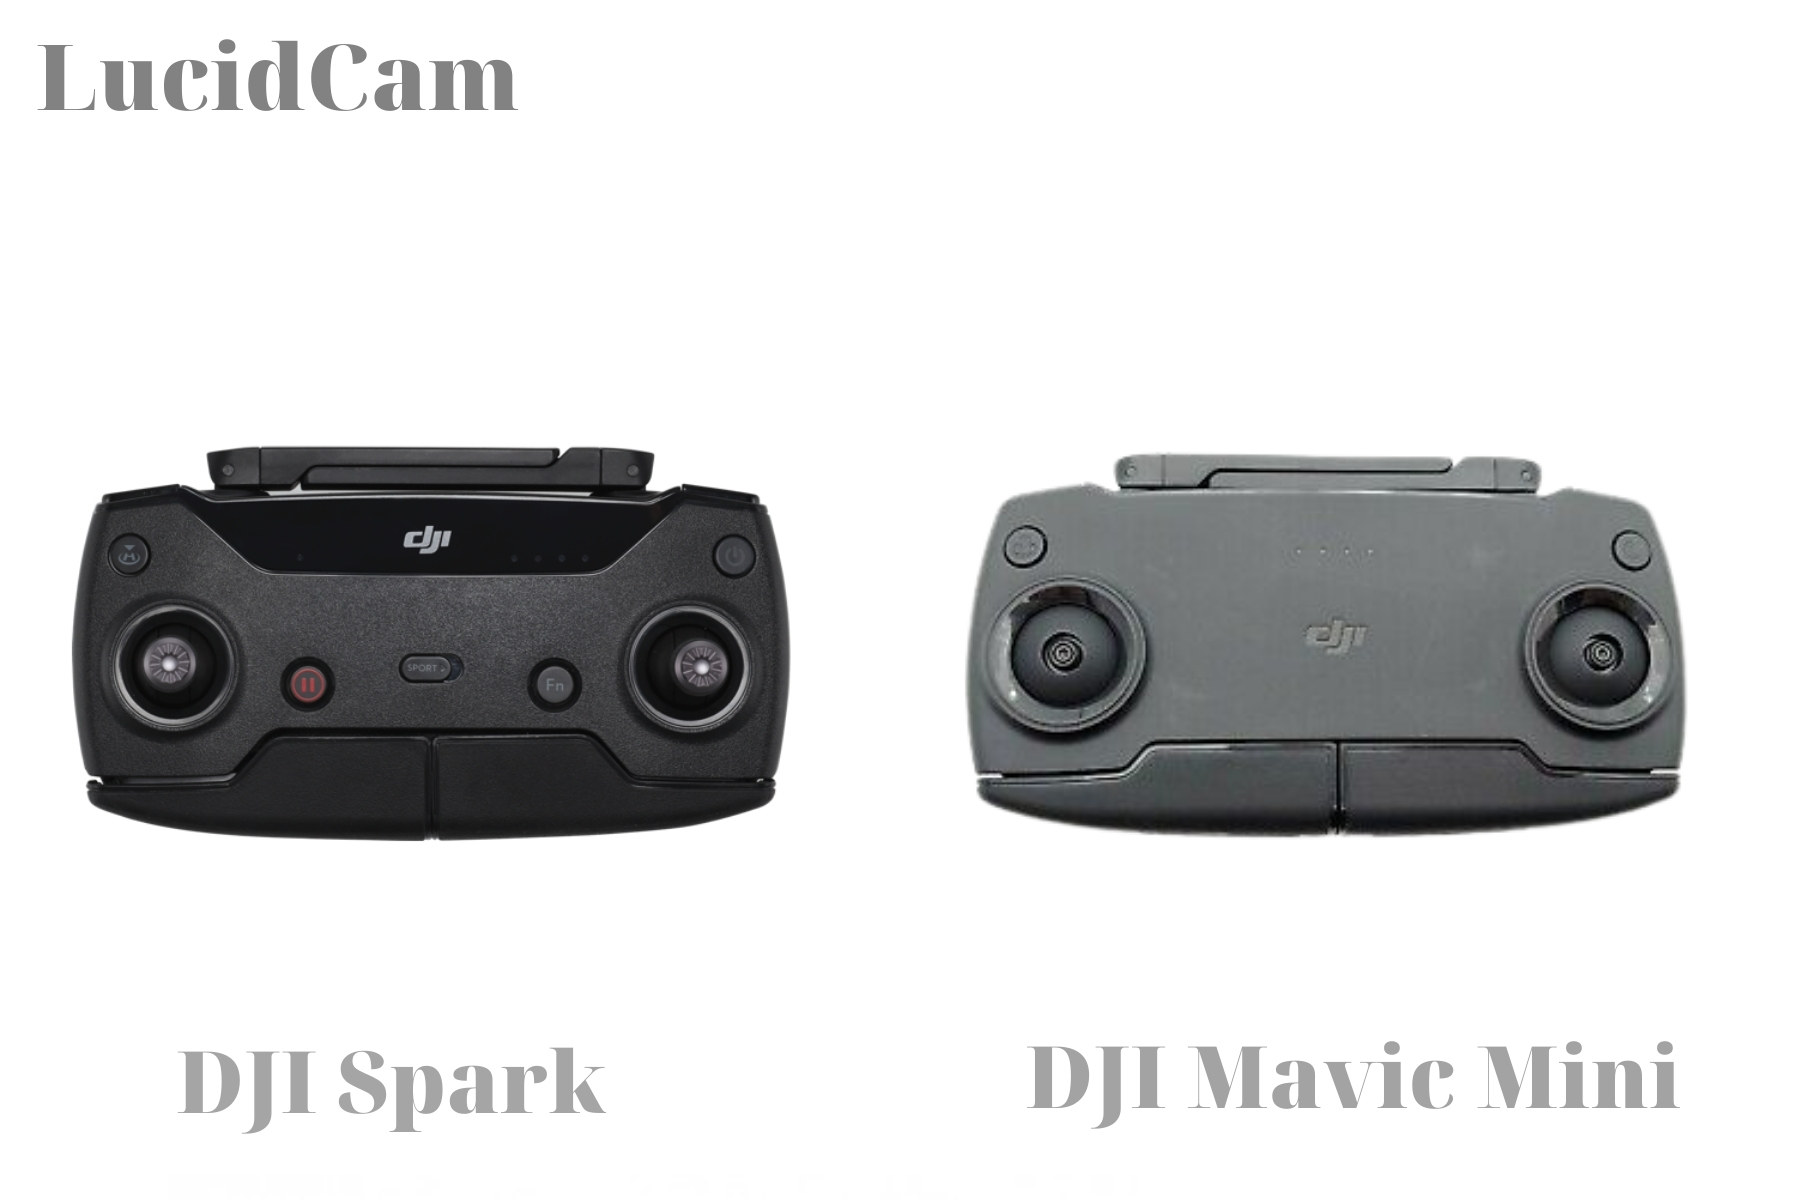 DJI Mavic Mini vs DJI Spark Drone - Control Range